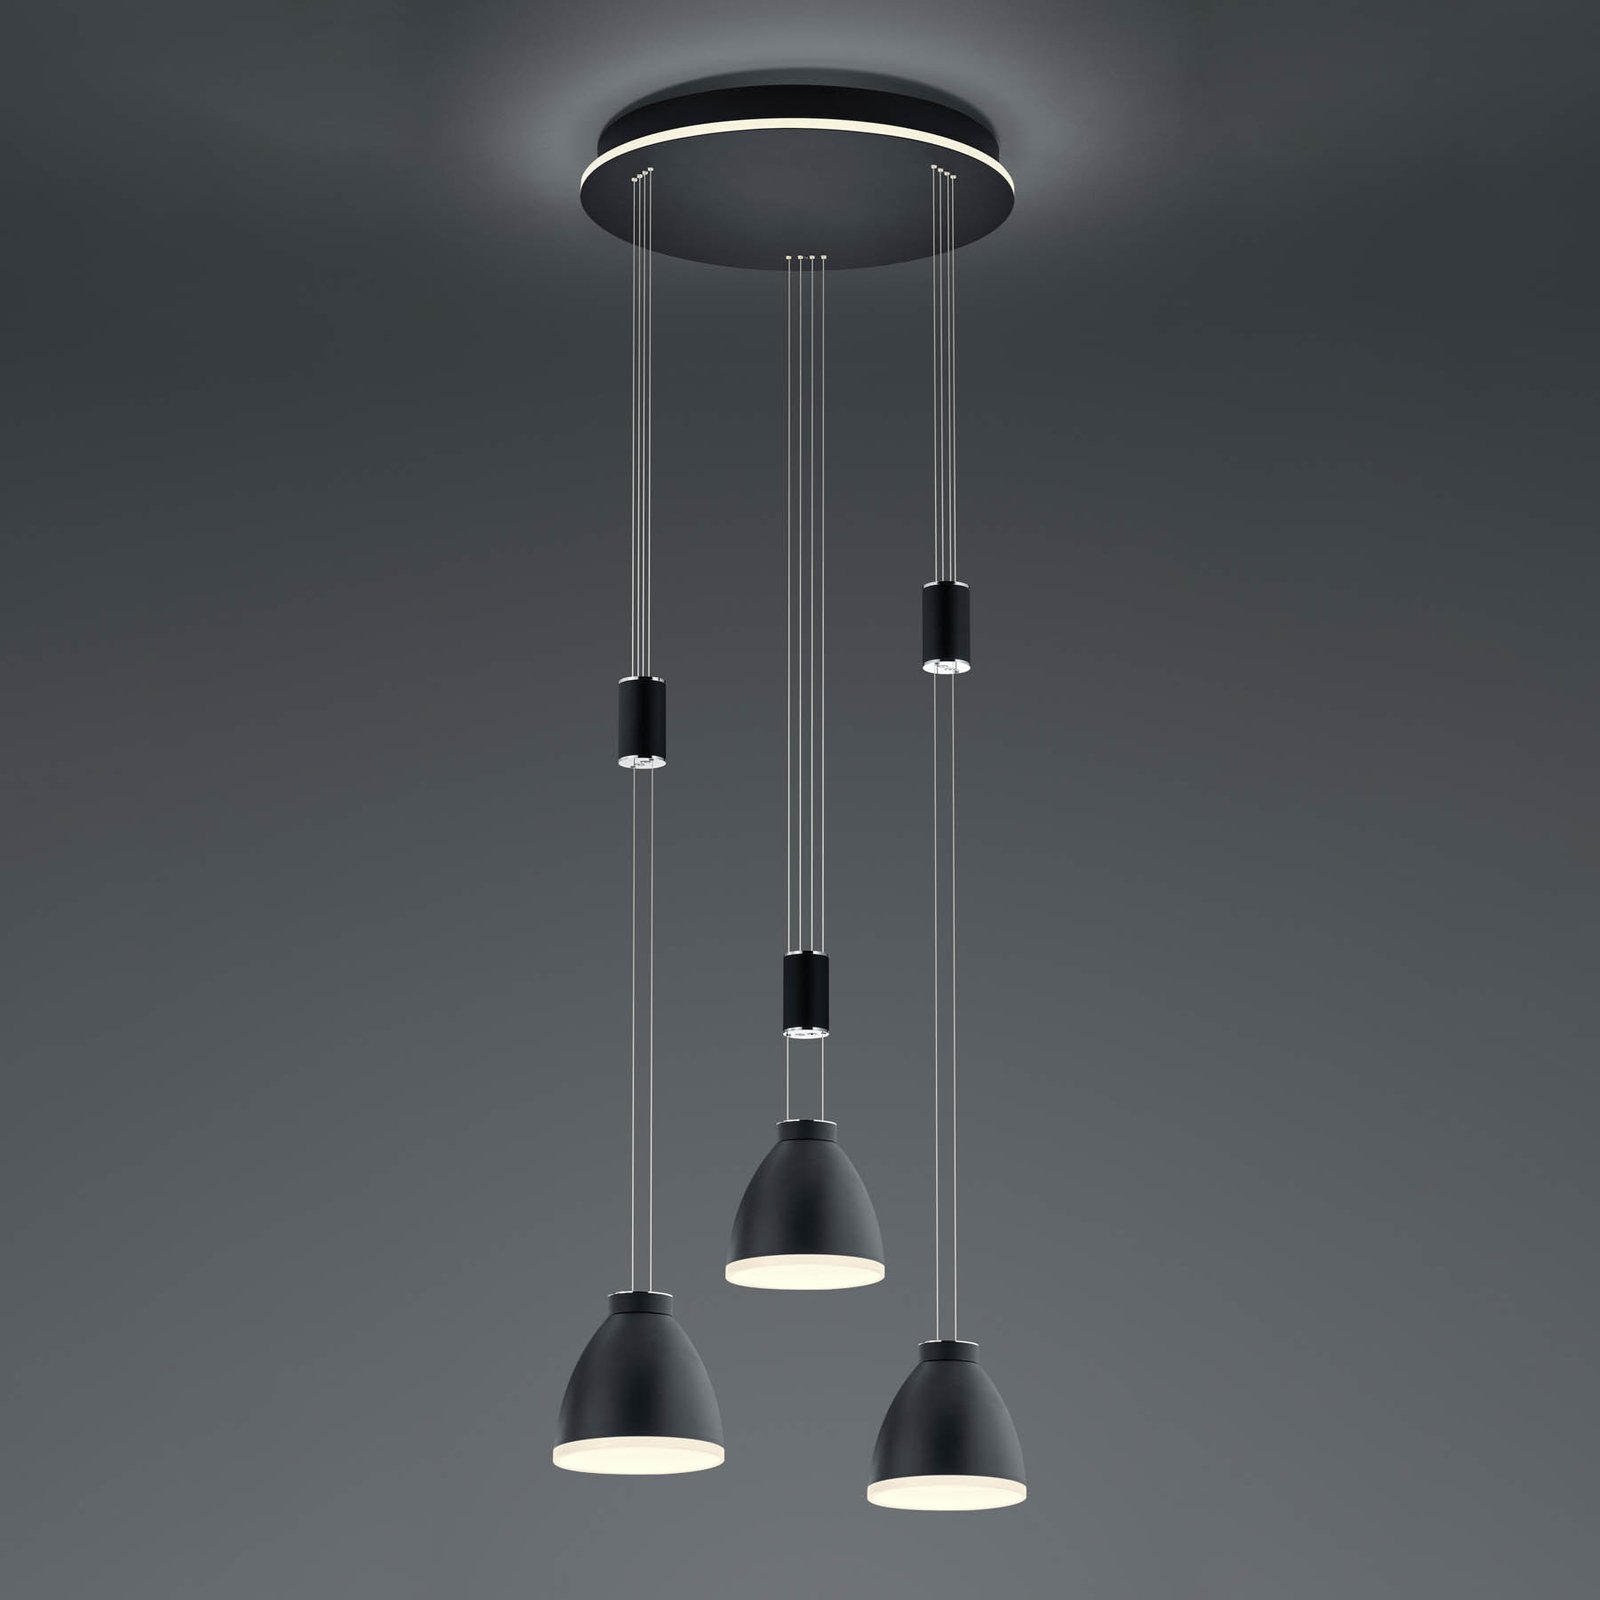 LED-hänglampa Leni, 3 lampor, rund, svart